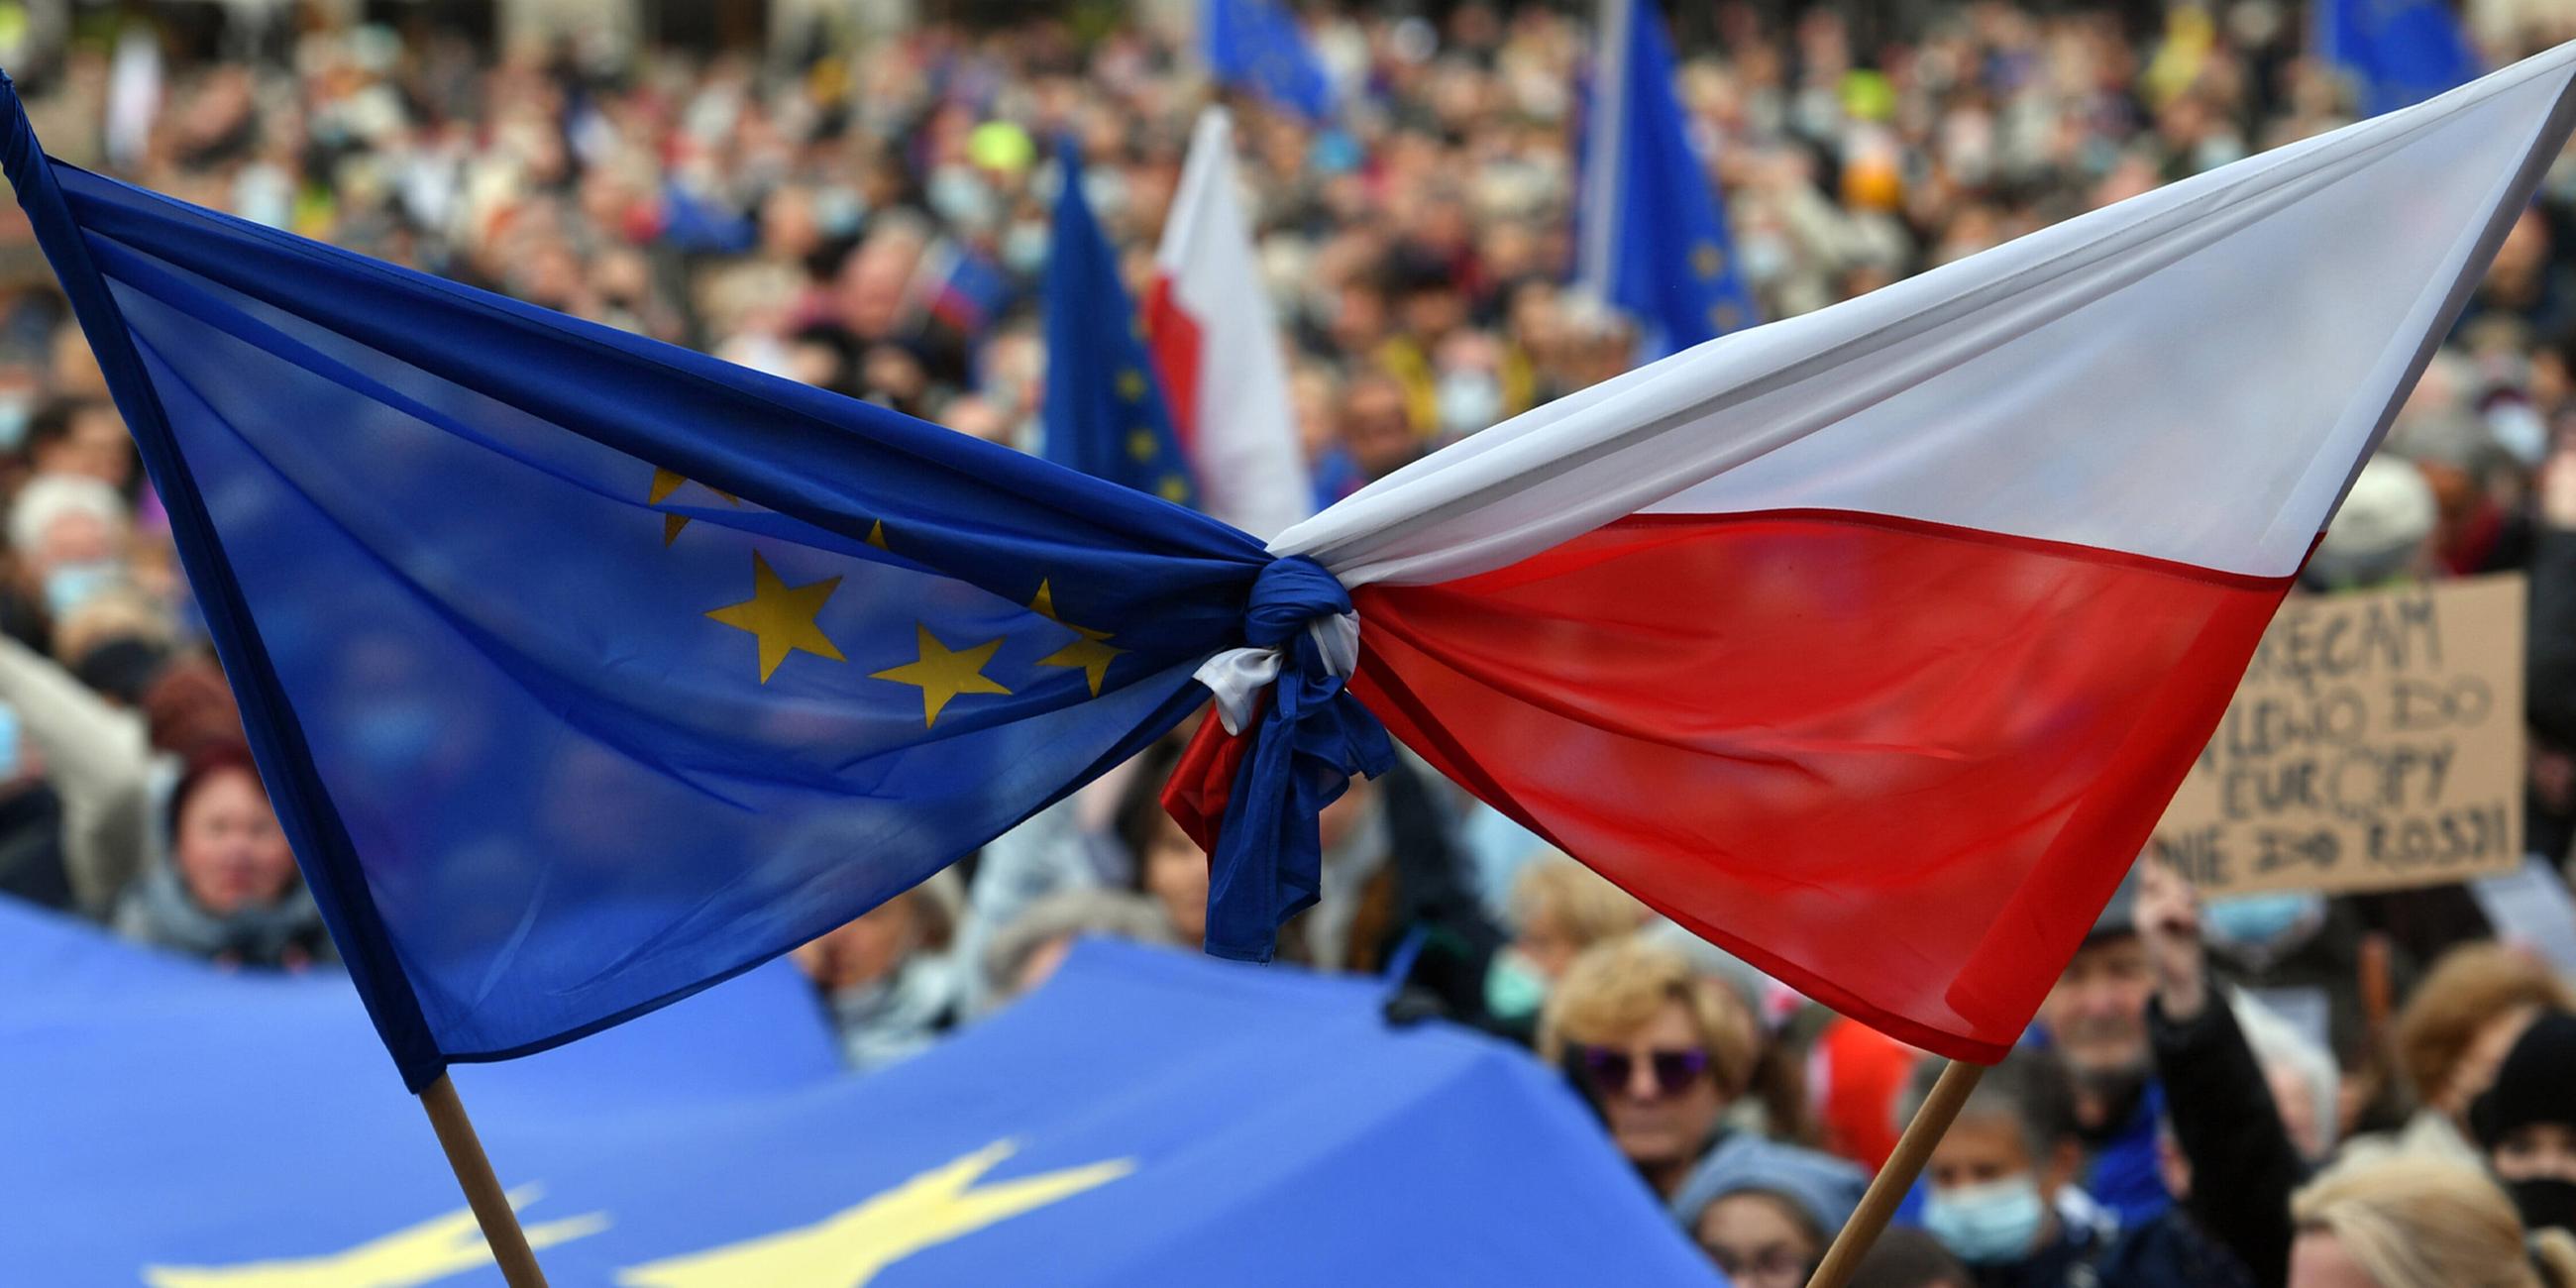 Demonstranten halten gebundene Flaggen der Europäischen Union und Polens während der Demonstration am 10.10.2021.